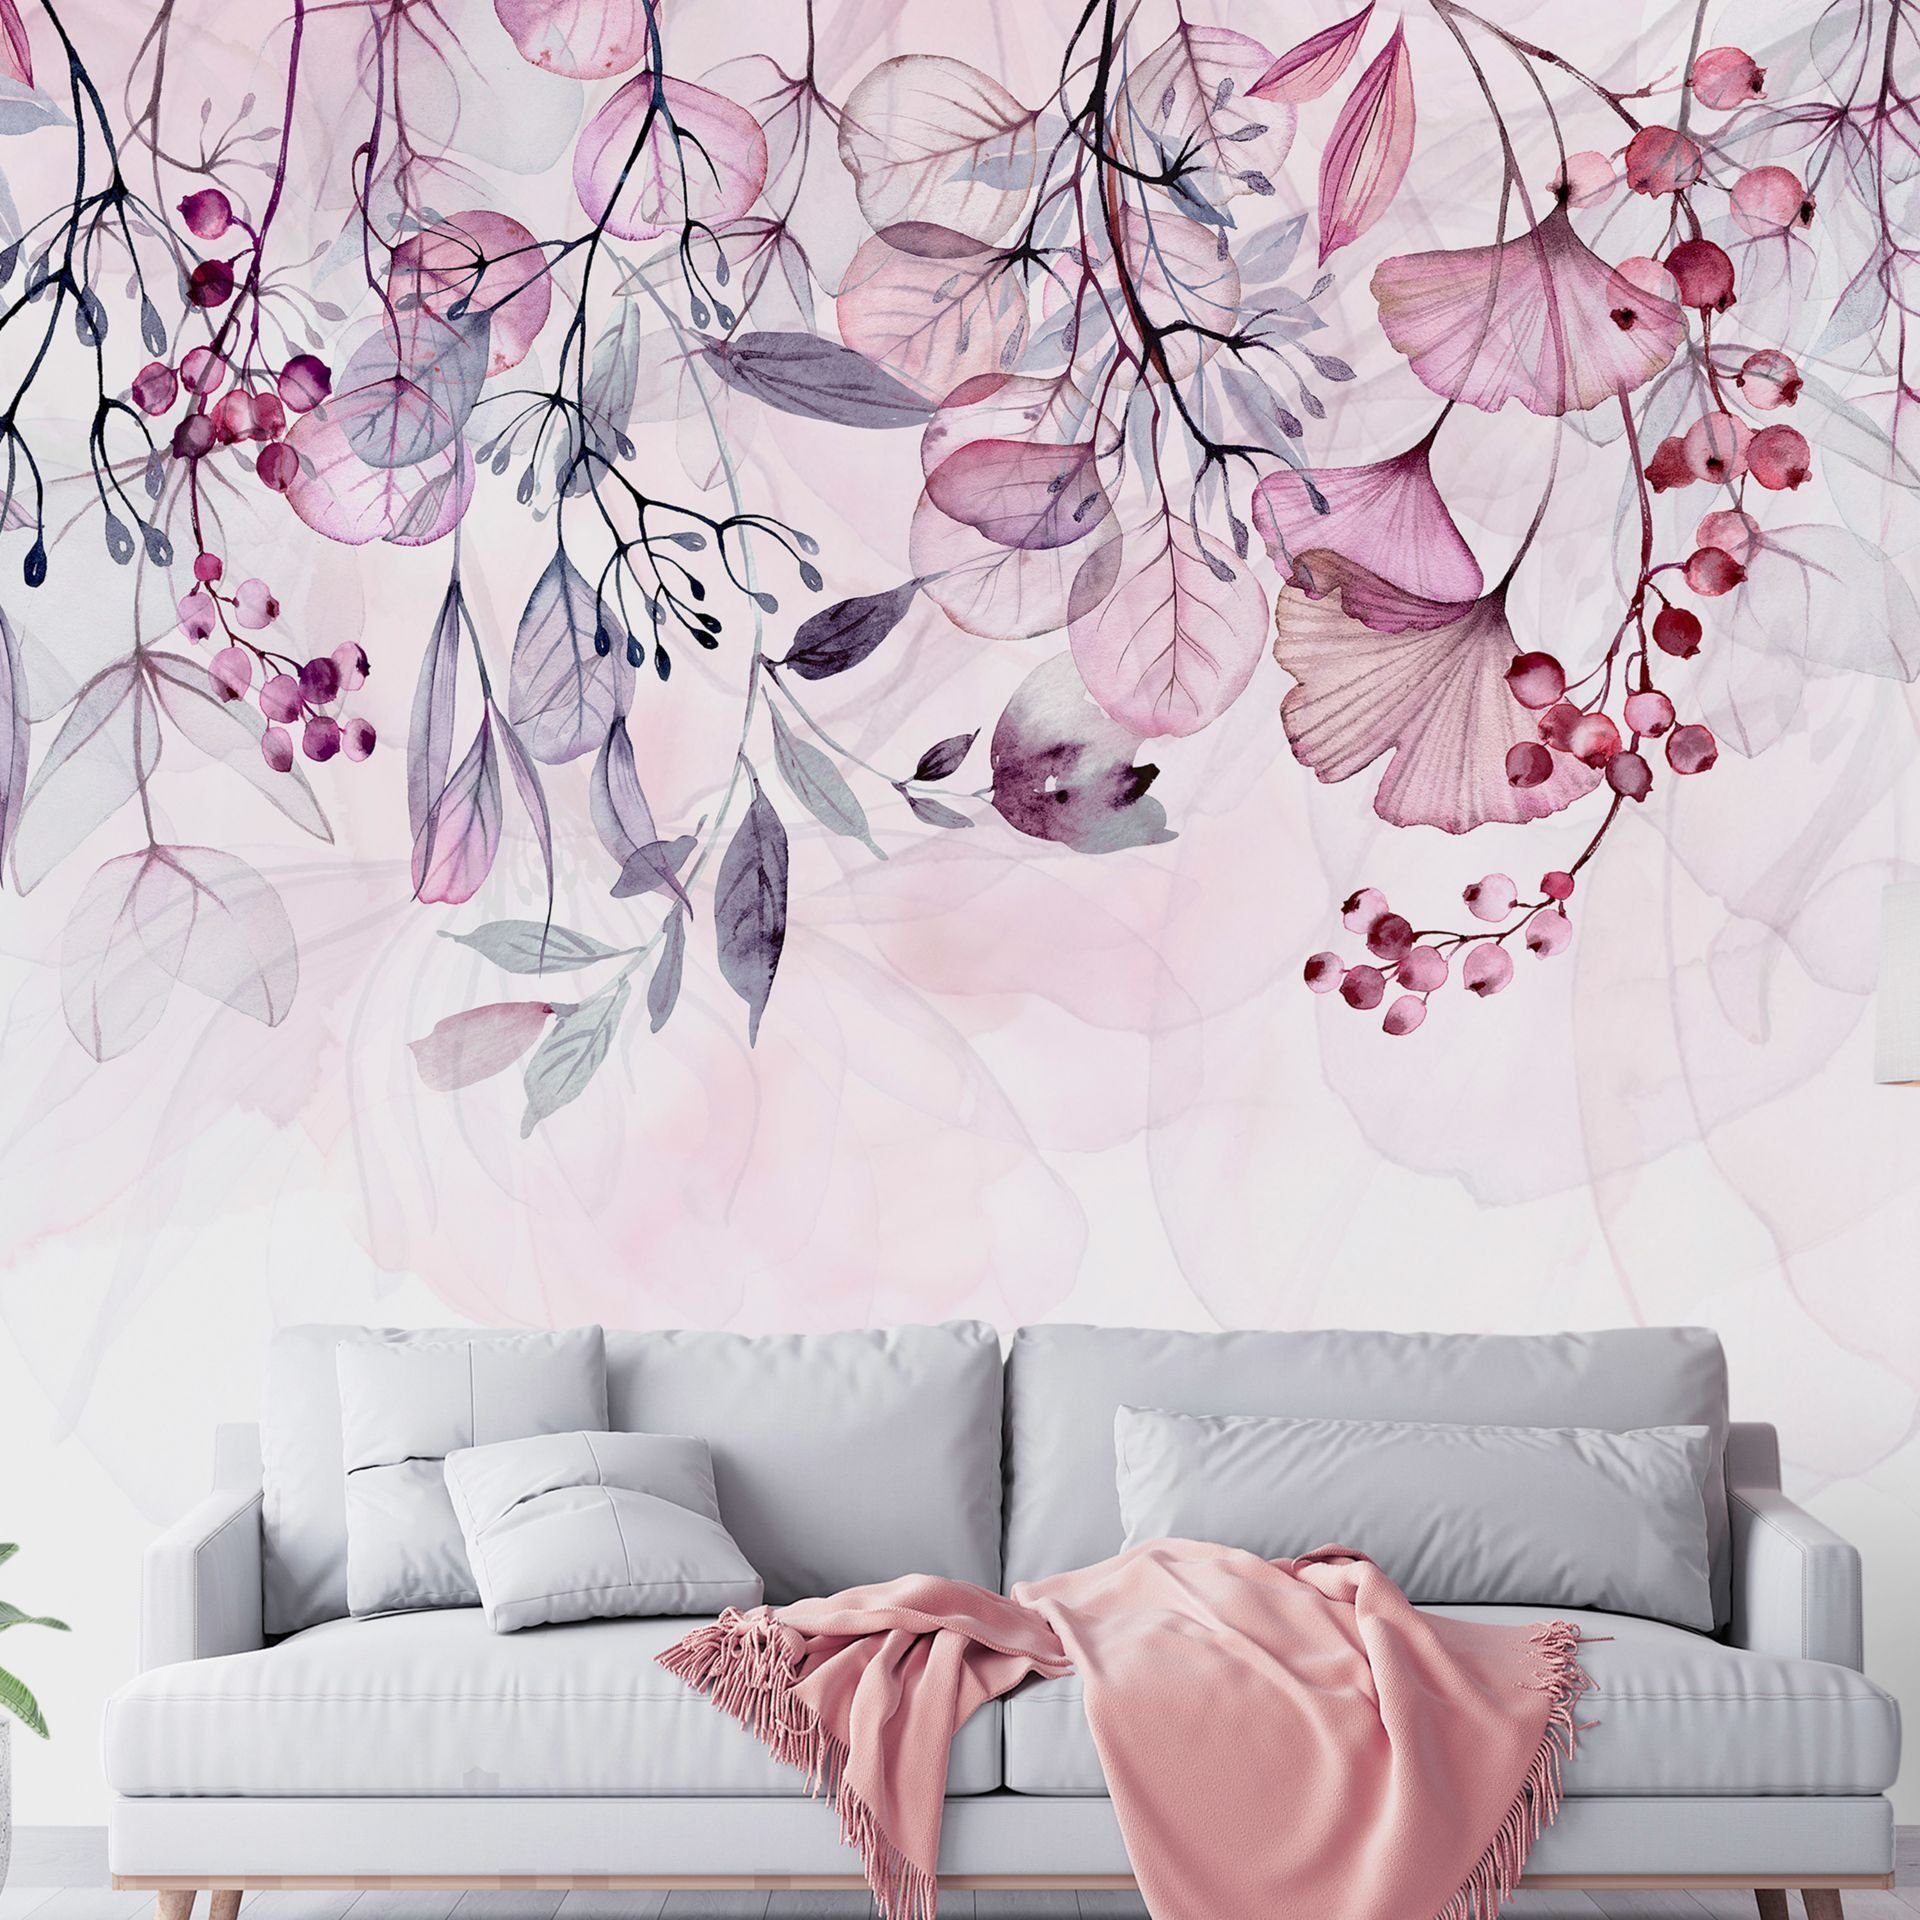 KUNSTLOFT Vliestapete Foggy Nature - Pink 0.98x0.7 m, halb-matt, matt, lichtbeständige Design Tapete